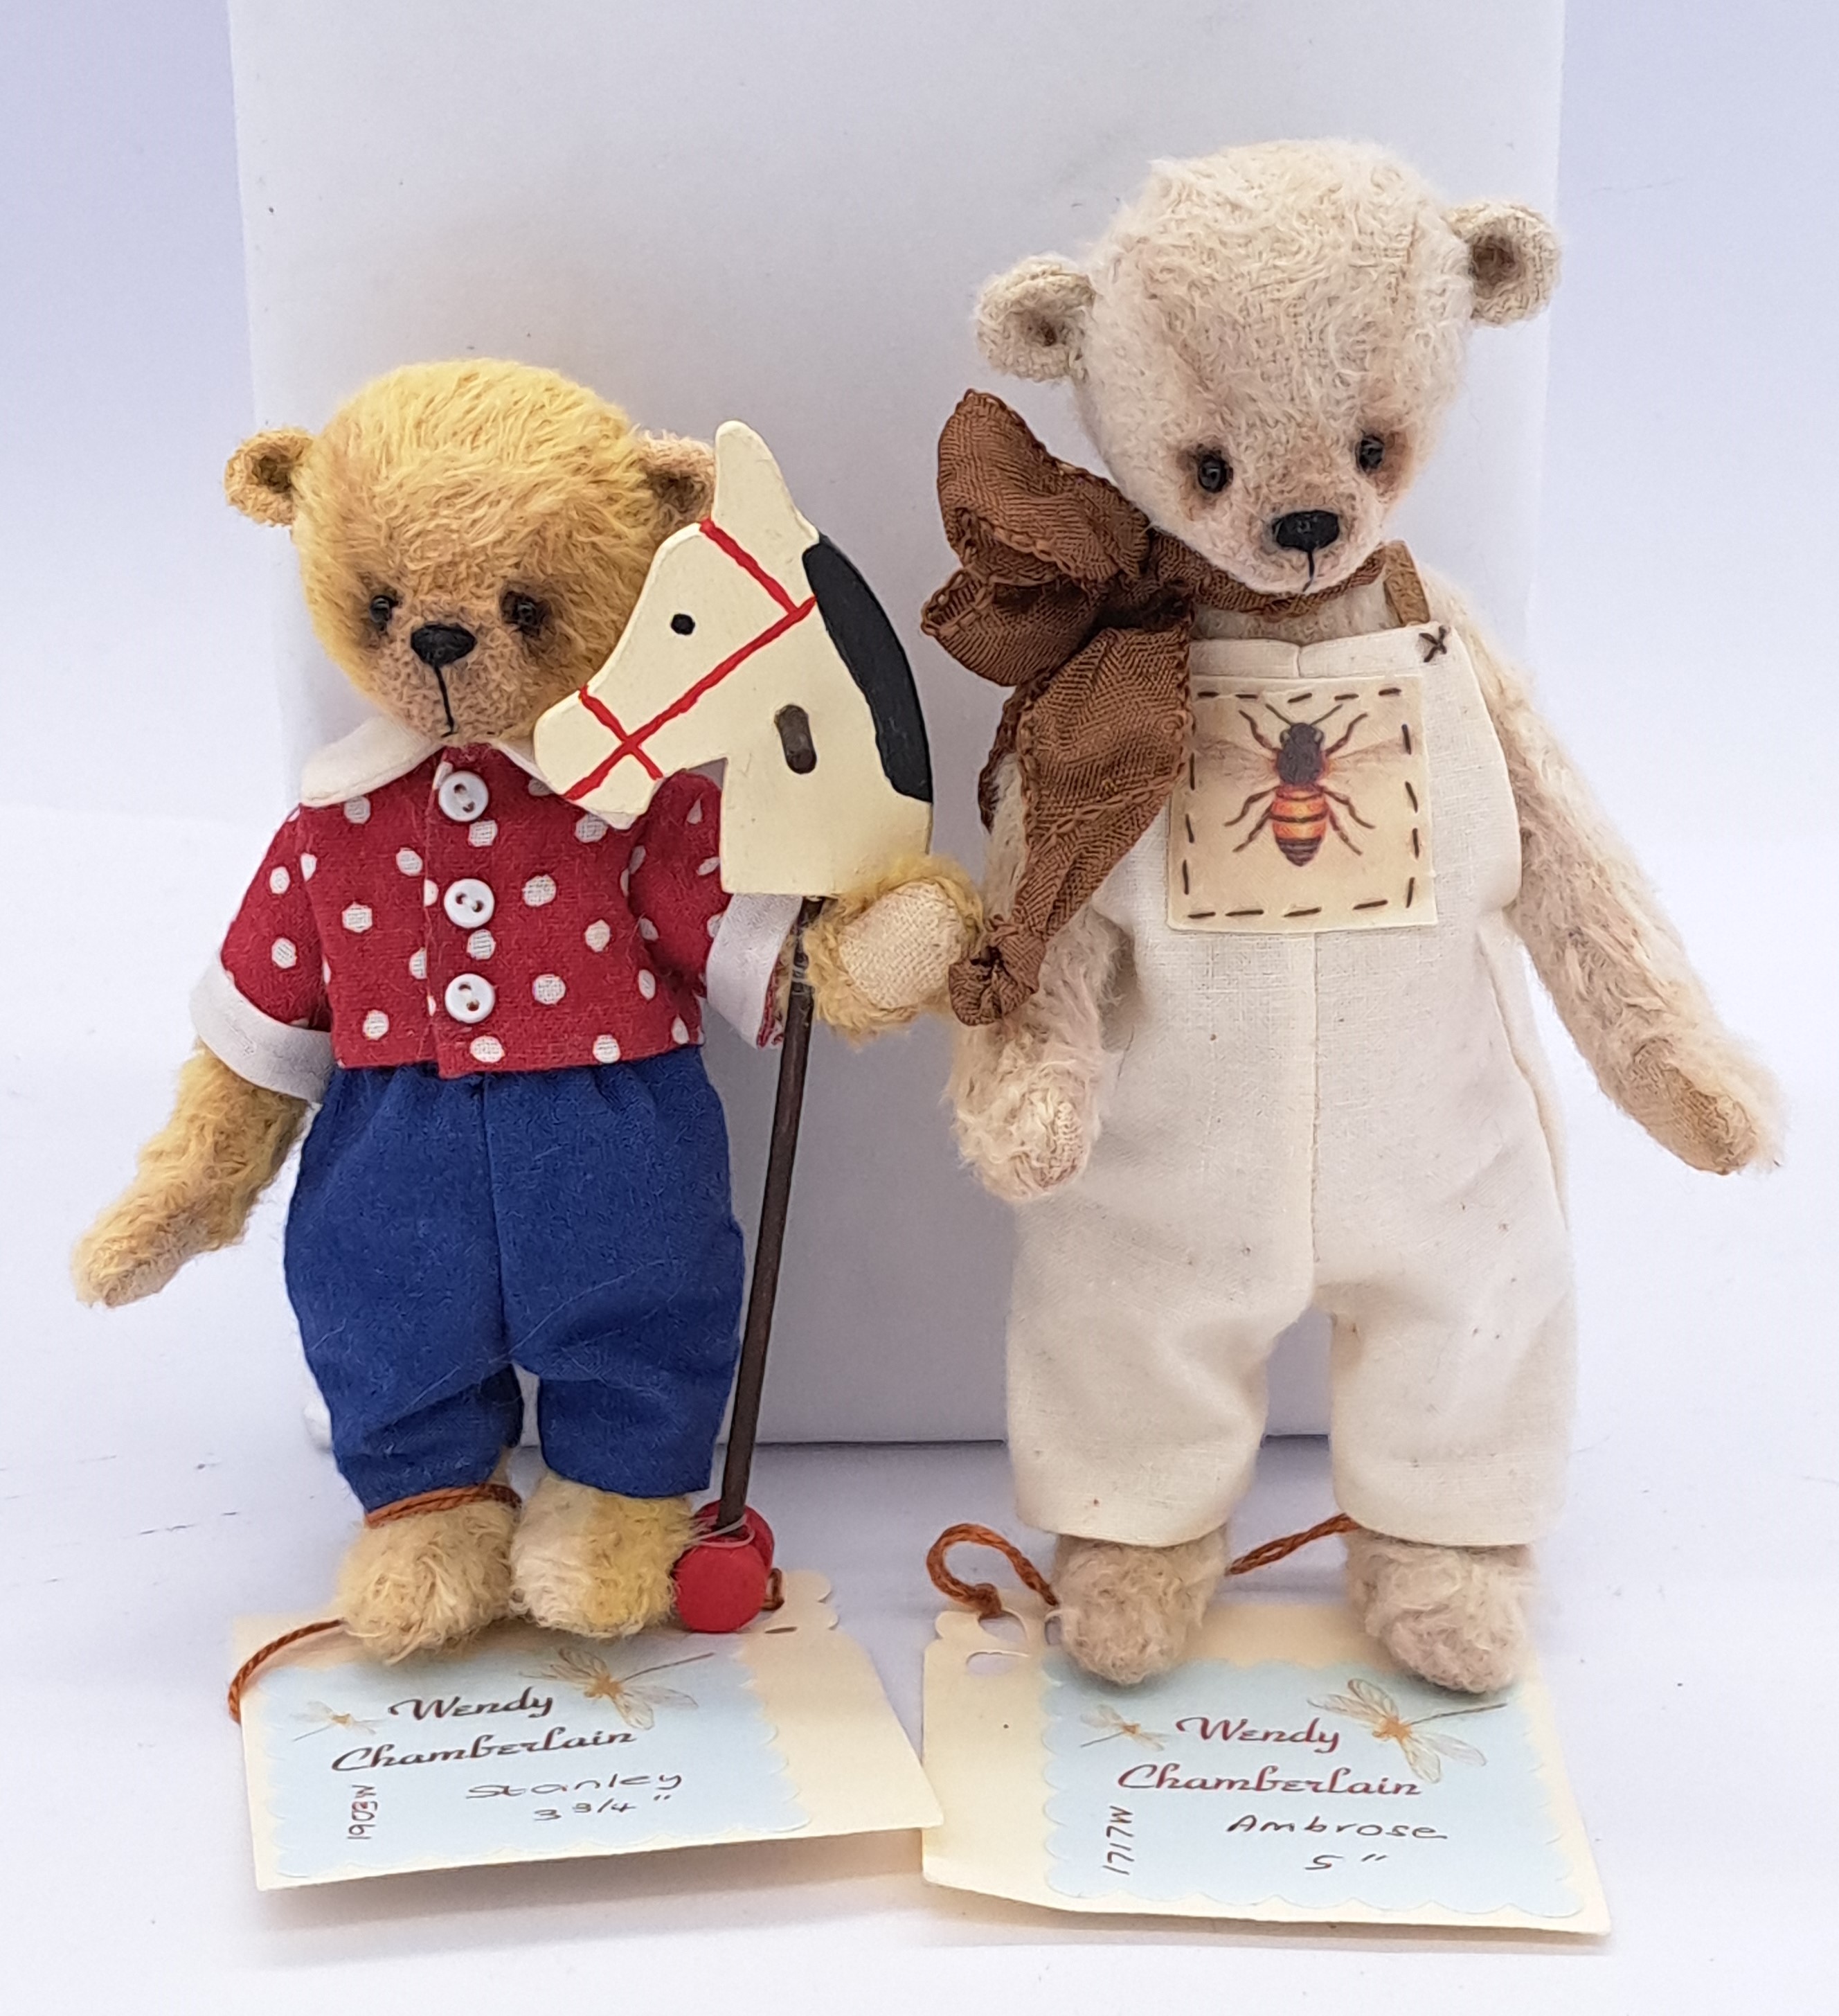 Essential Bears pair of miniature artist teddy bears